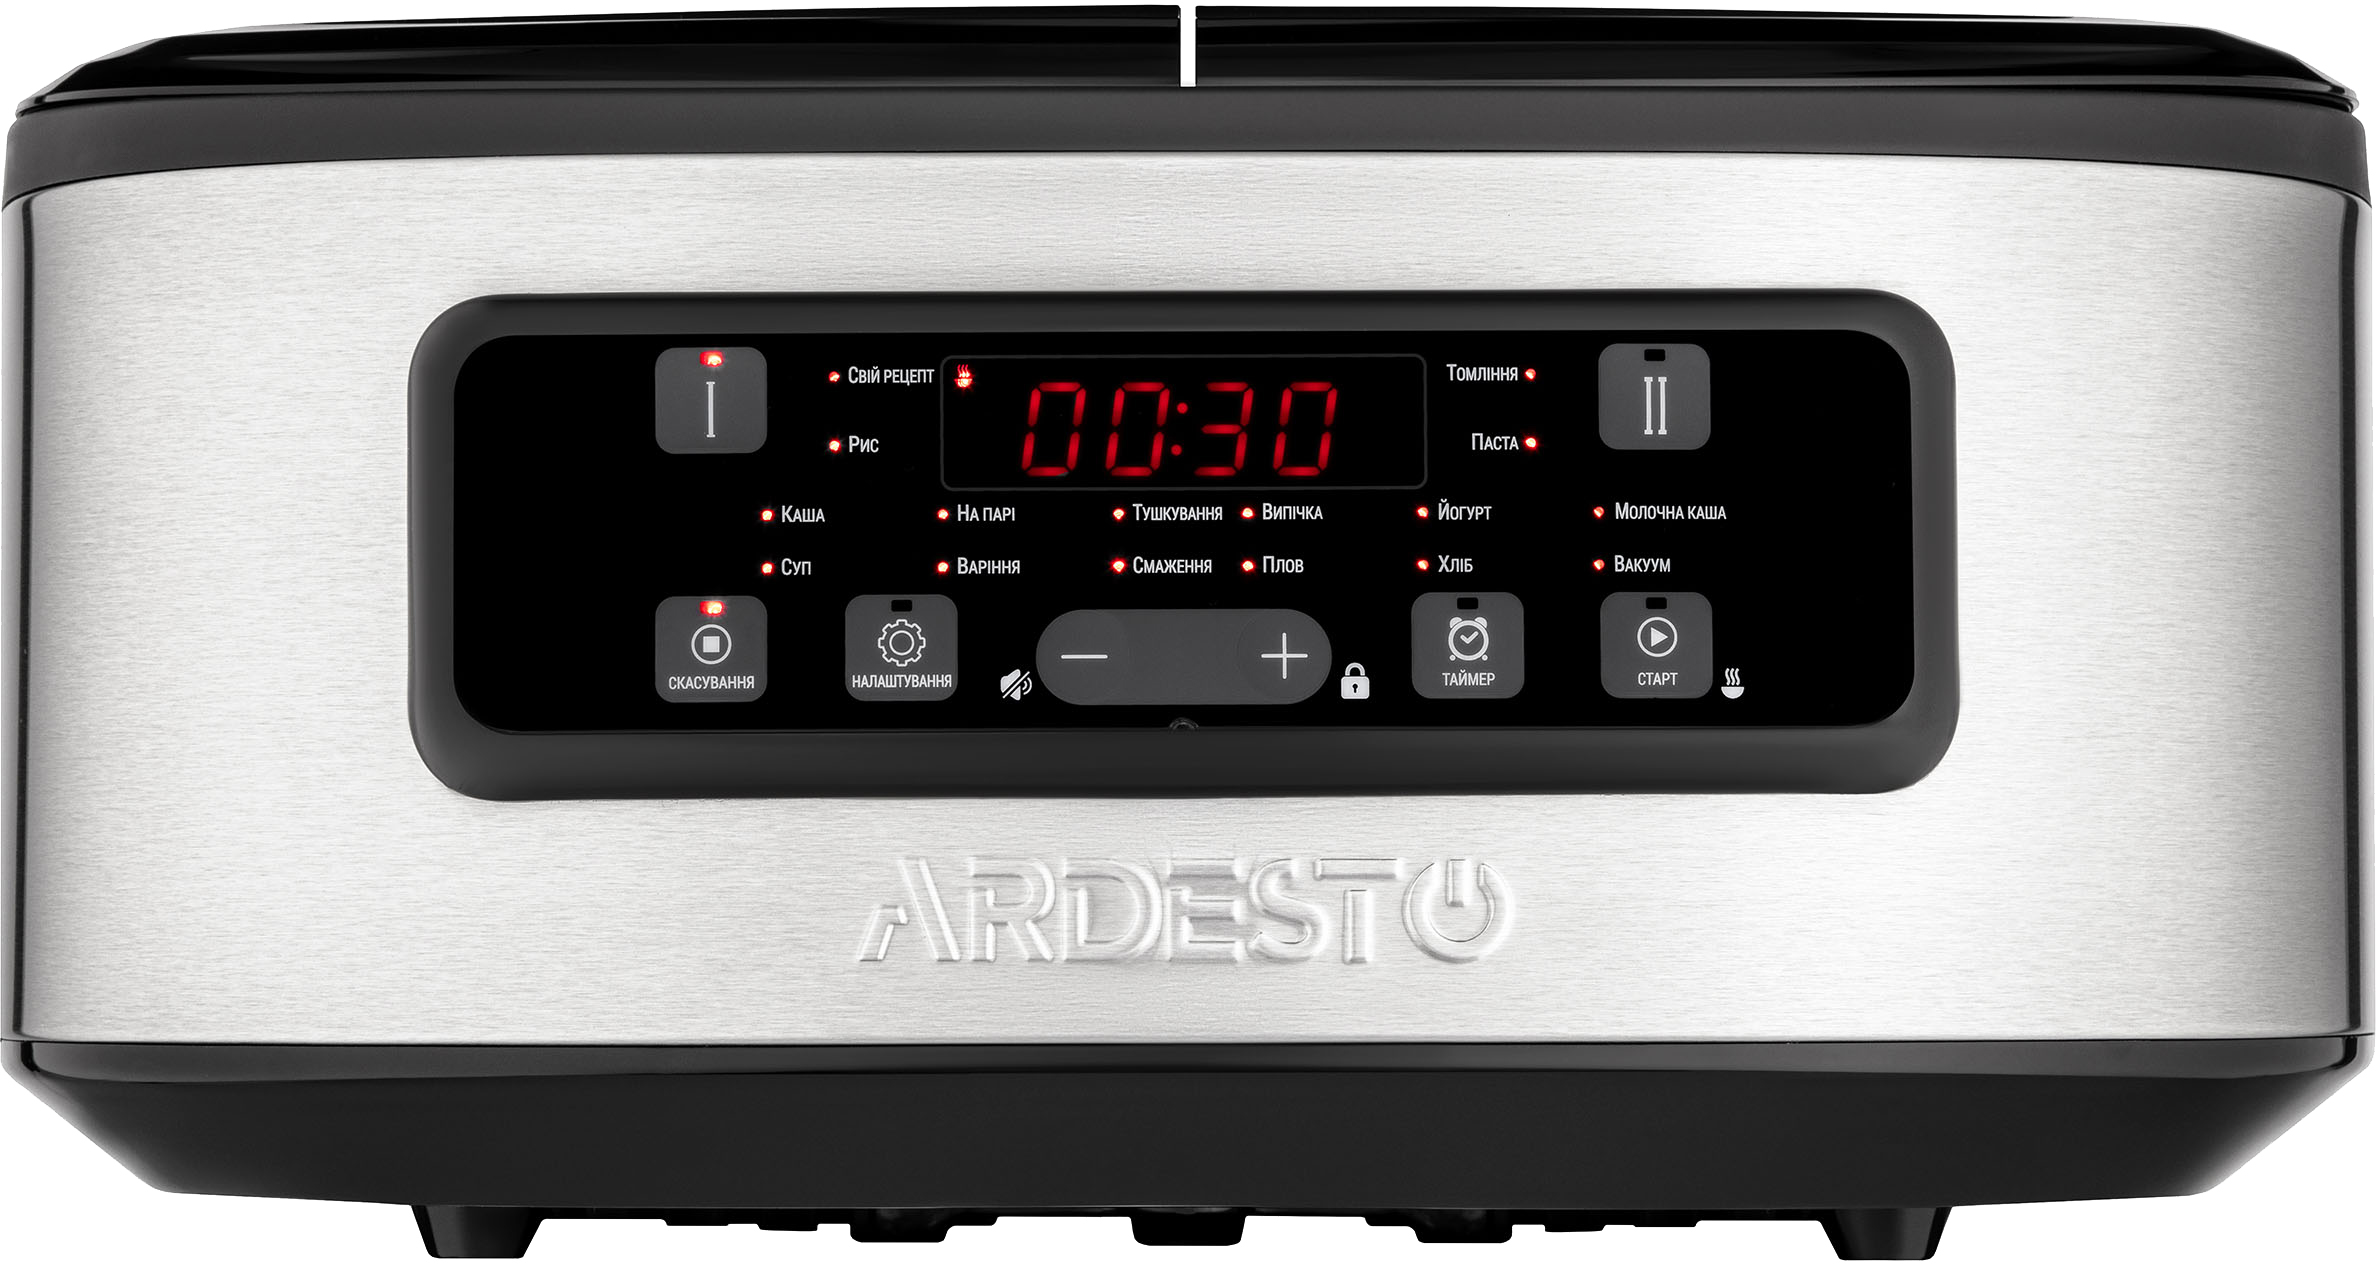 Ardesto DMC-SA1212SB